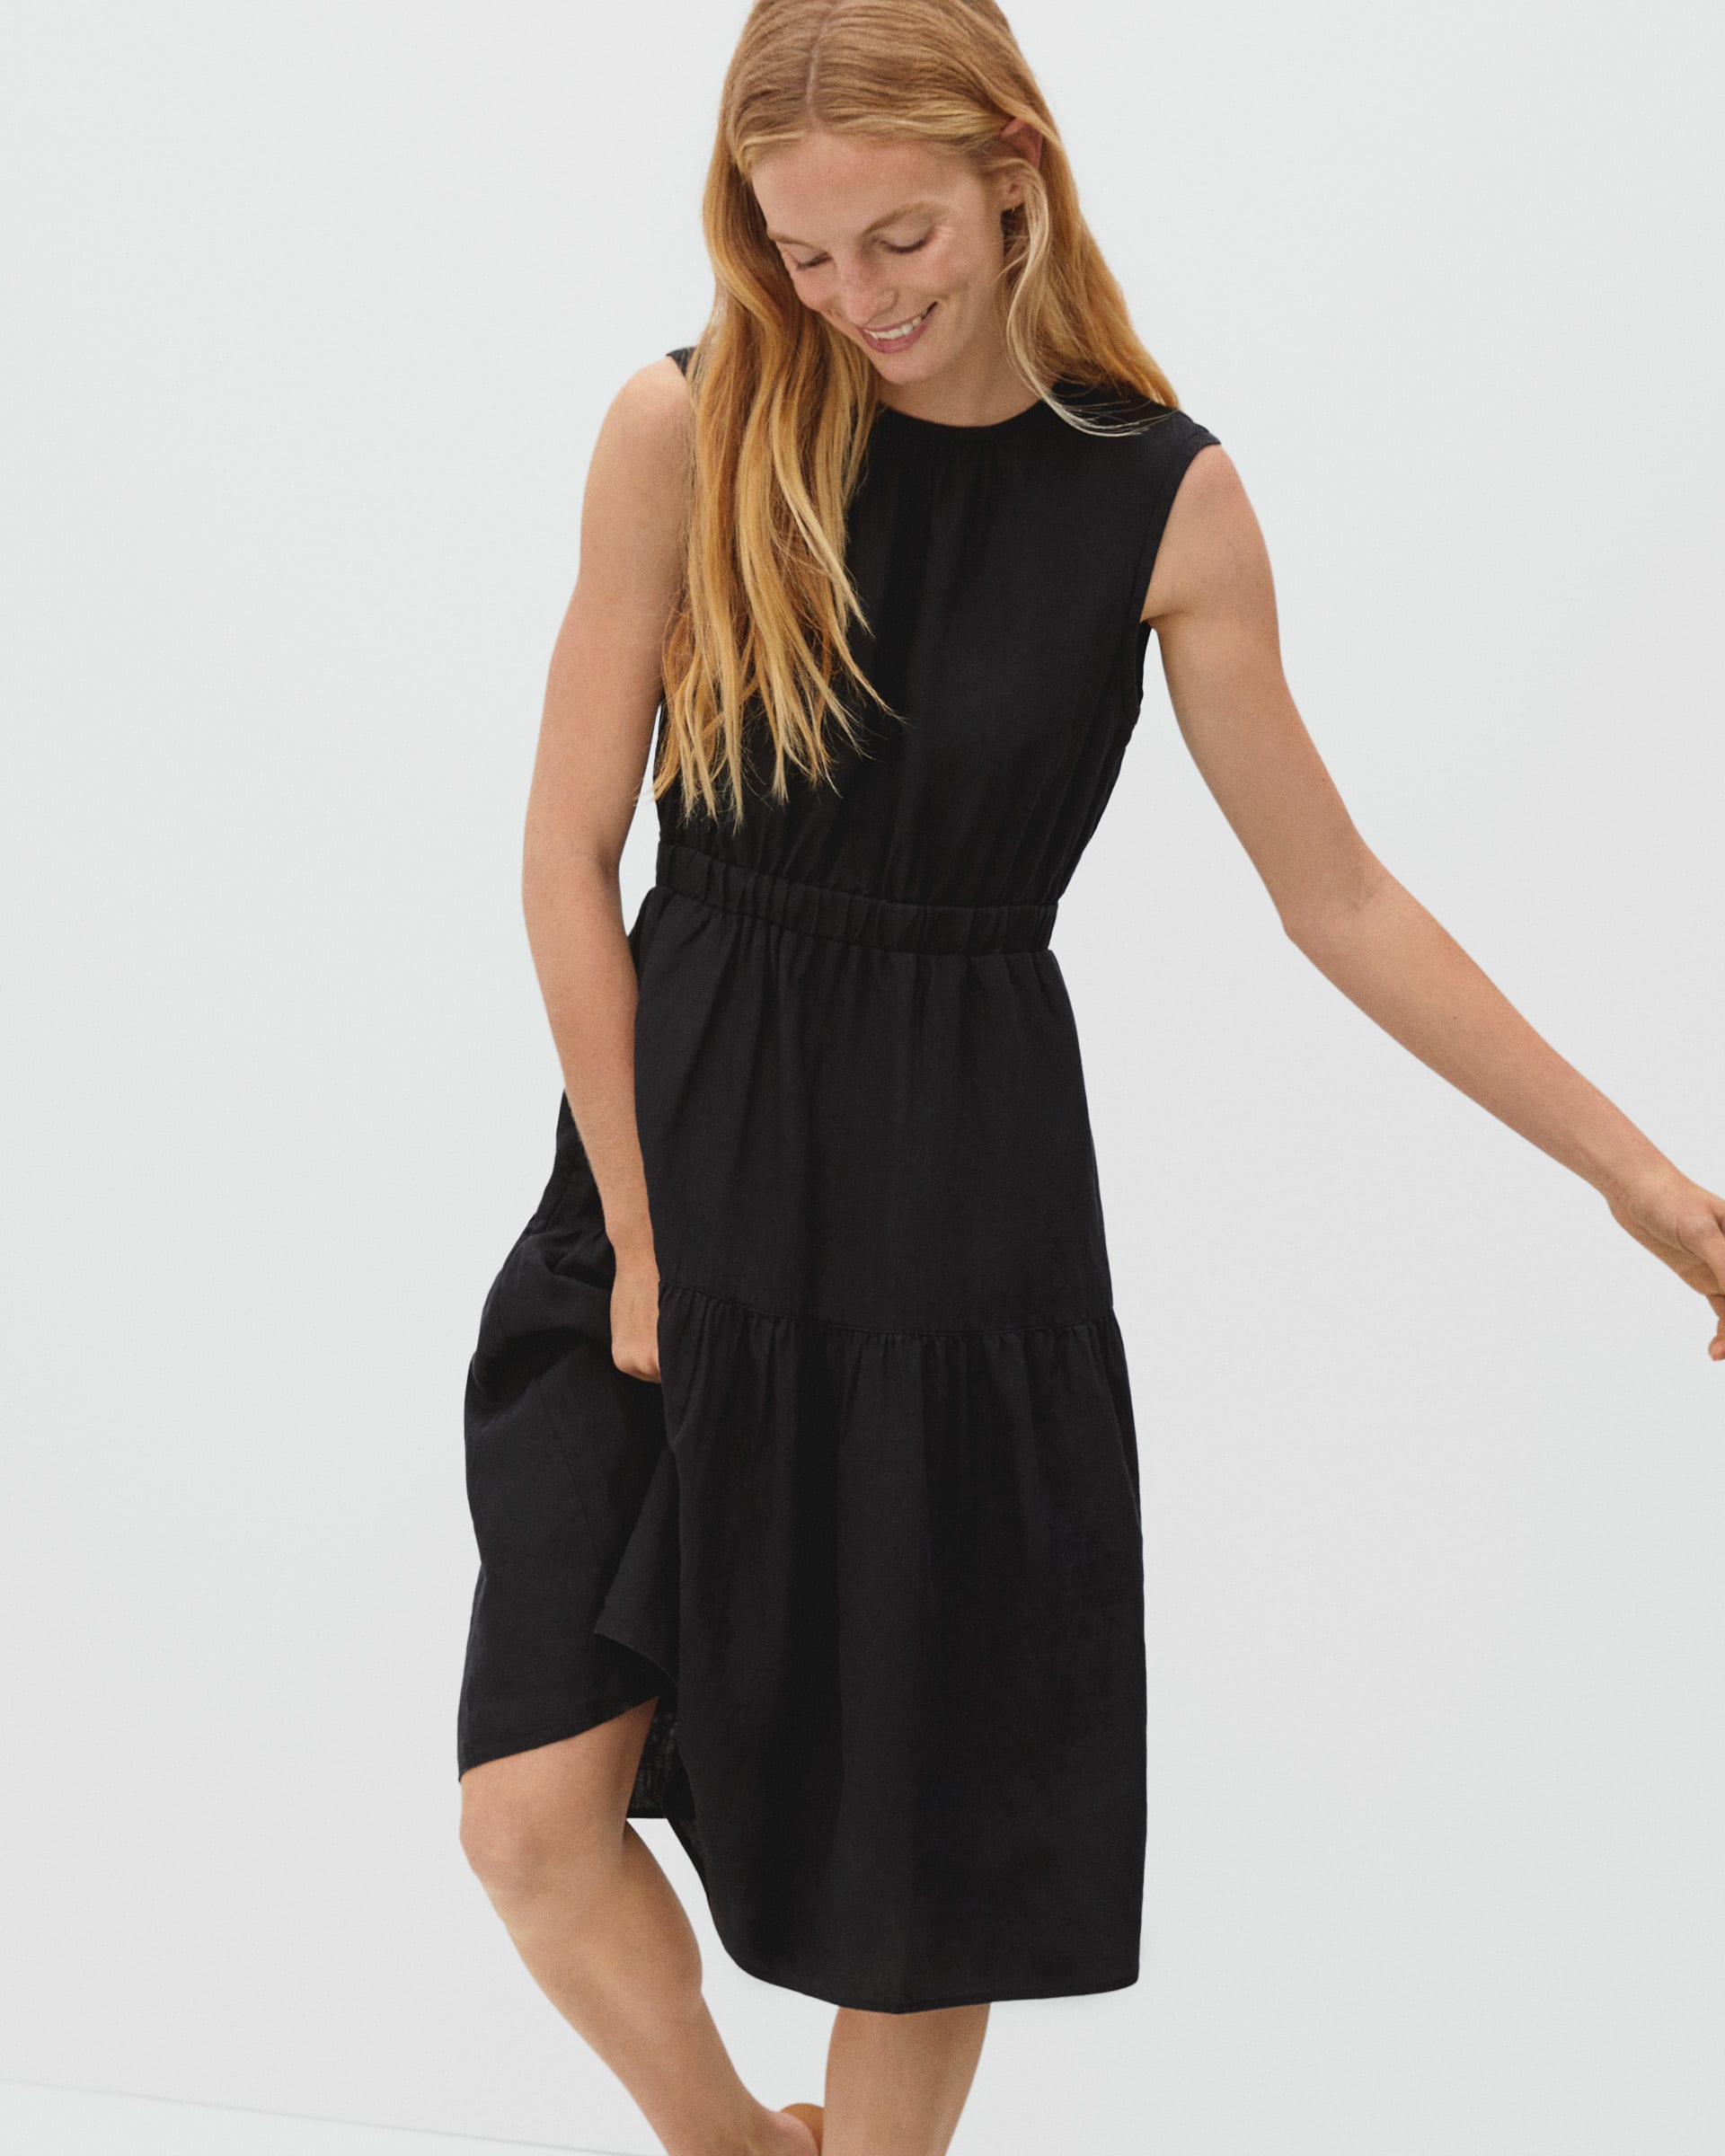 The Linen Open-Back Dress Black – Everlane